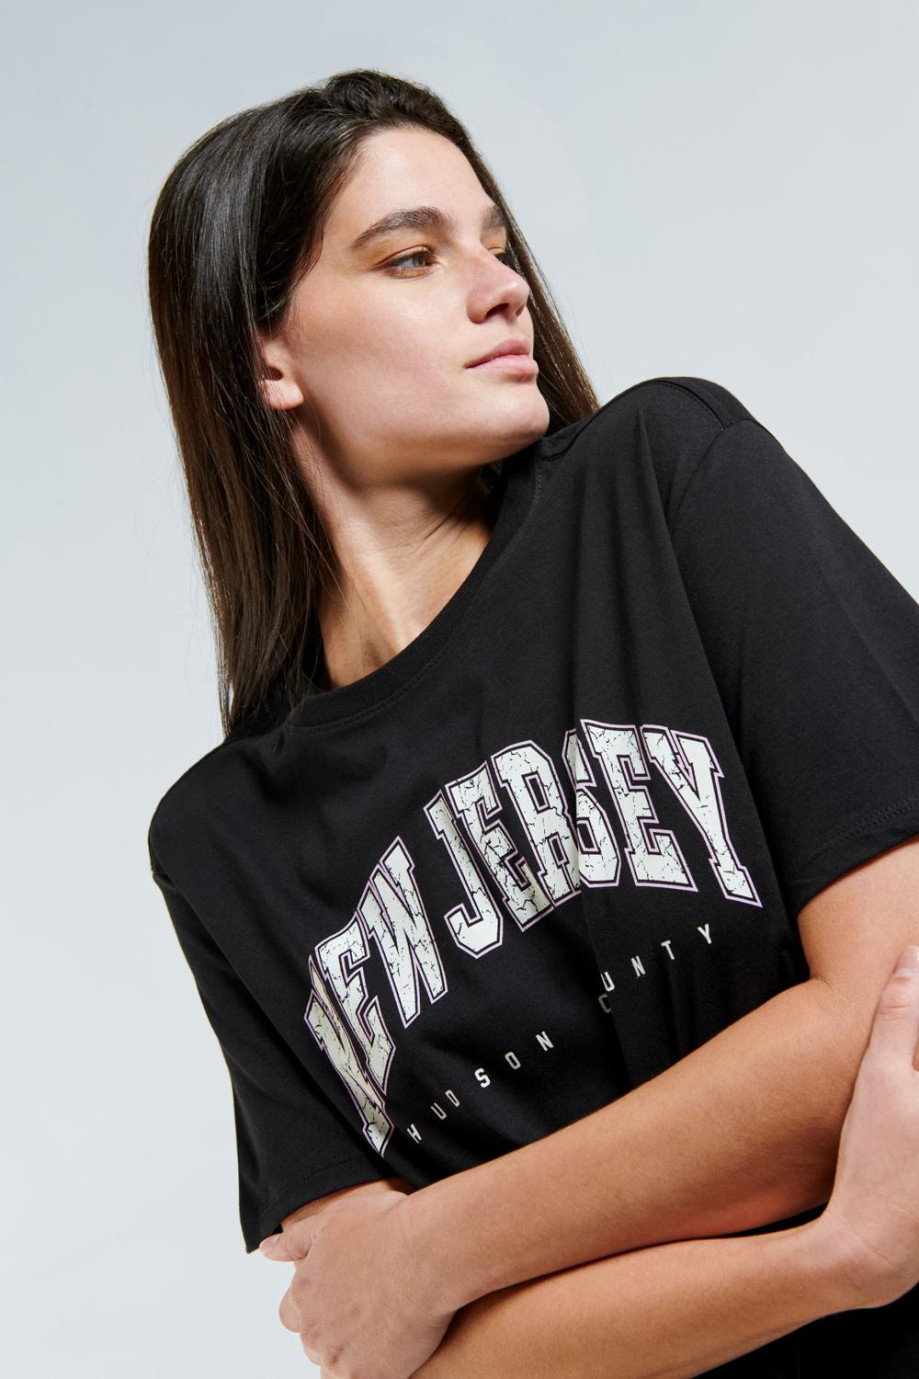 Camiseta en algodón oversize negra con manga corta y diseño college